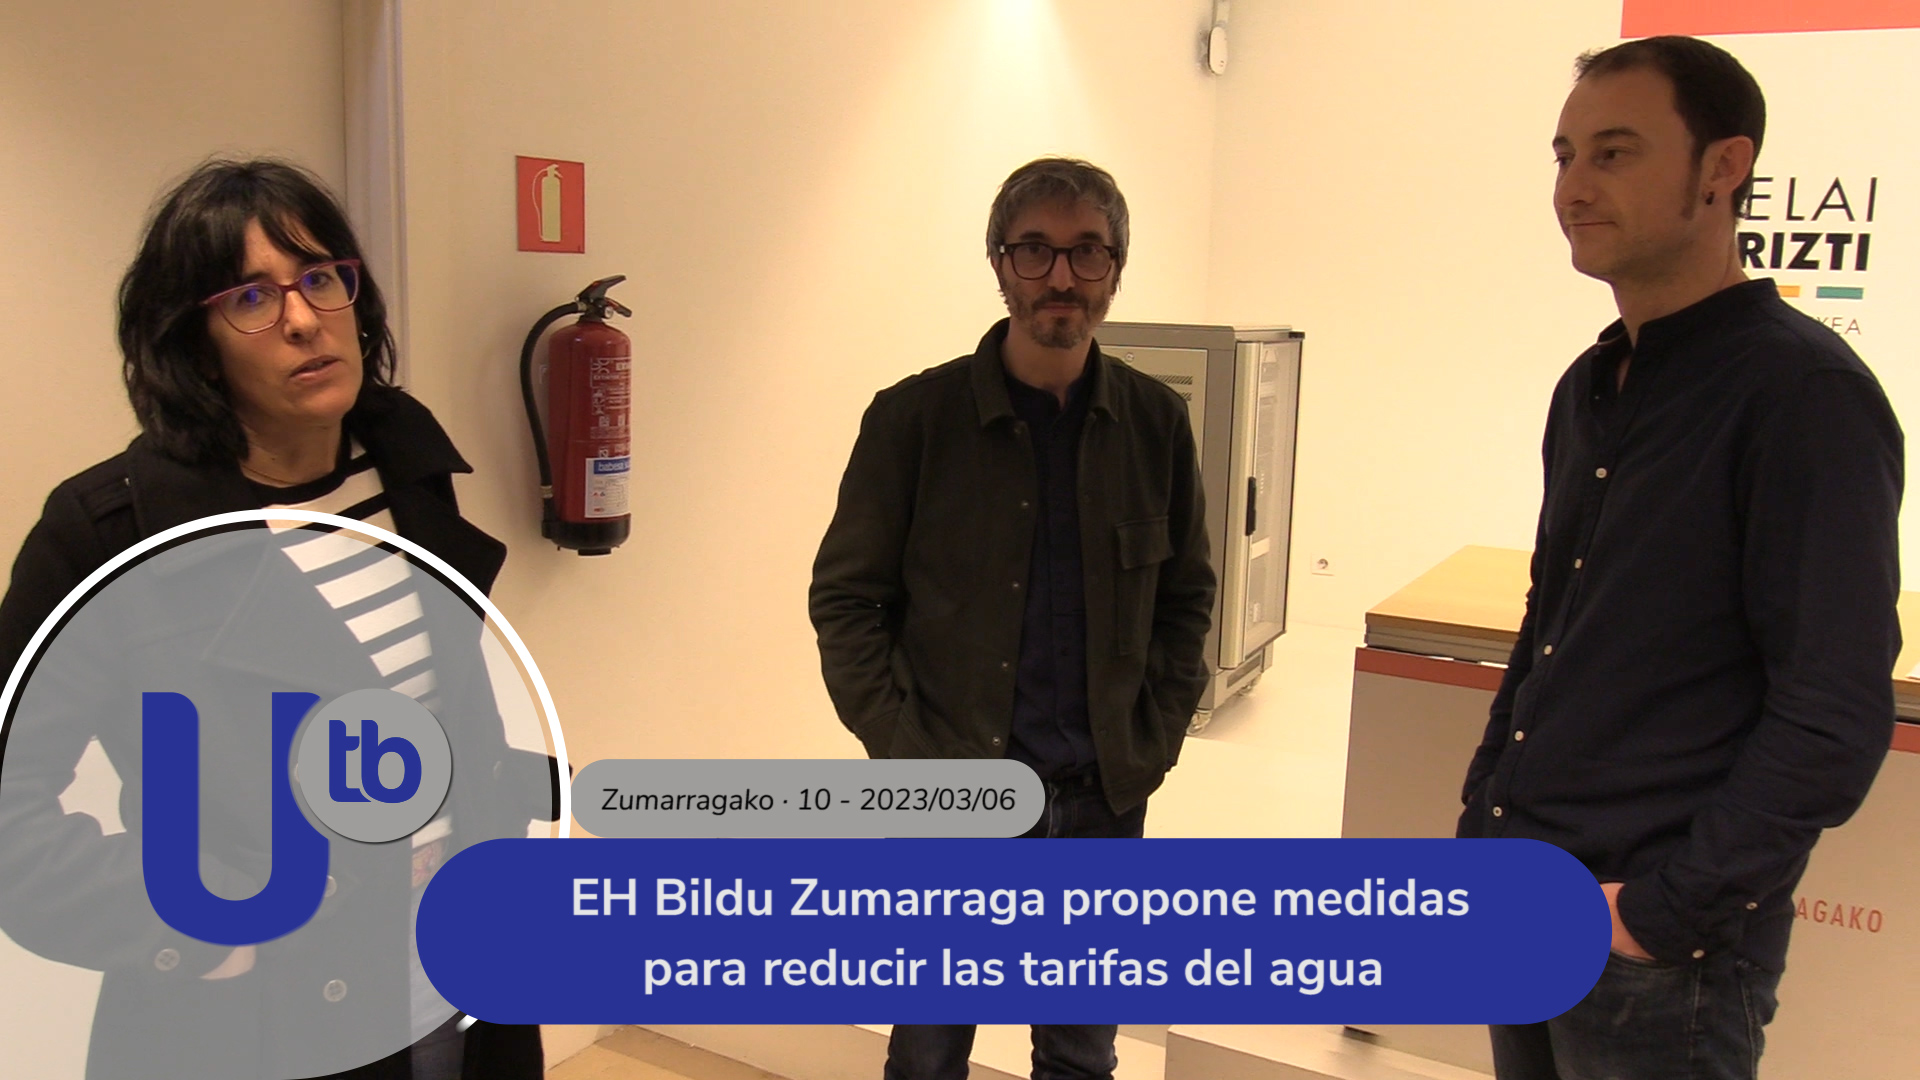 EH Bildu Zumarraga propone medidas para reducir las tarifas del agua 